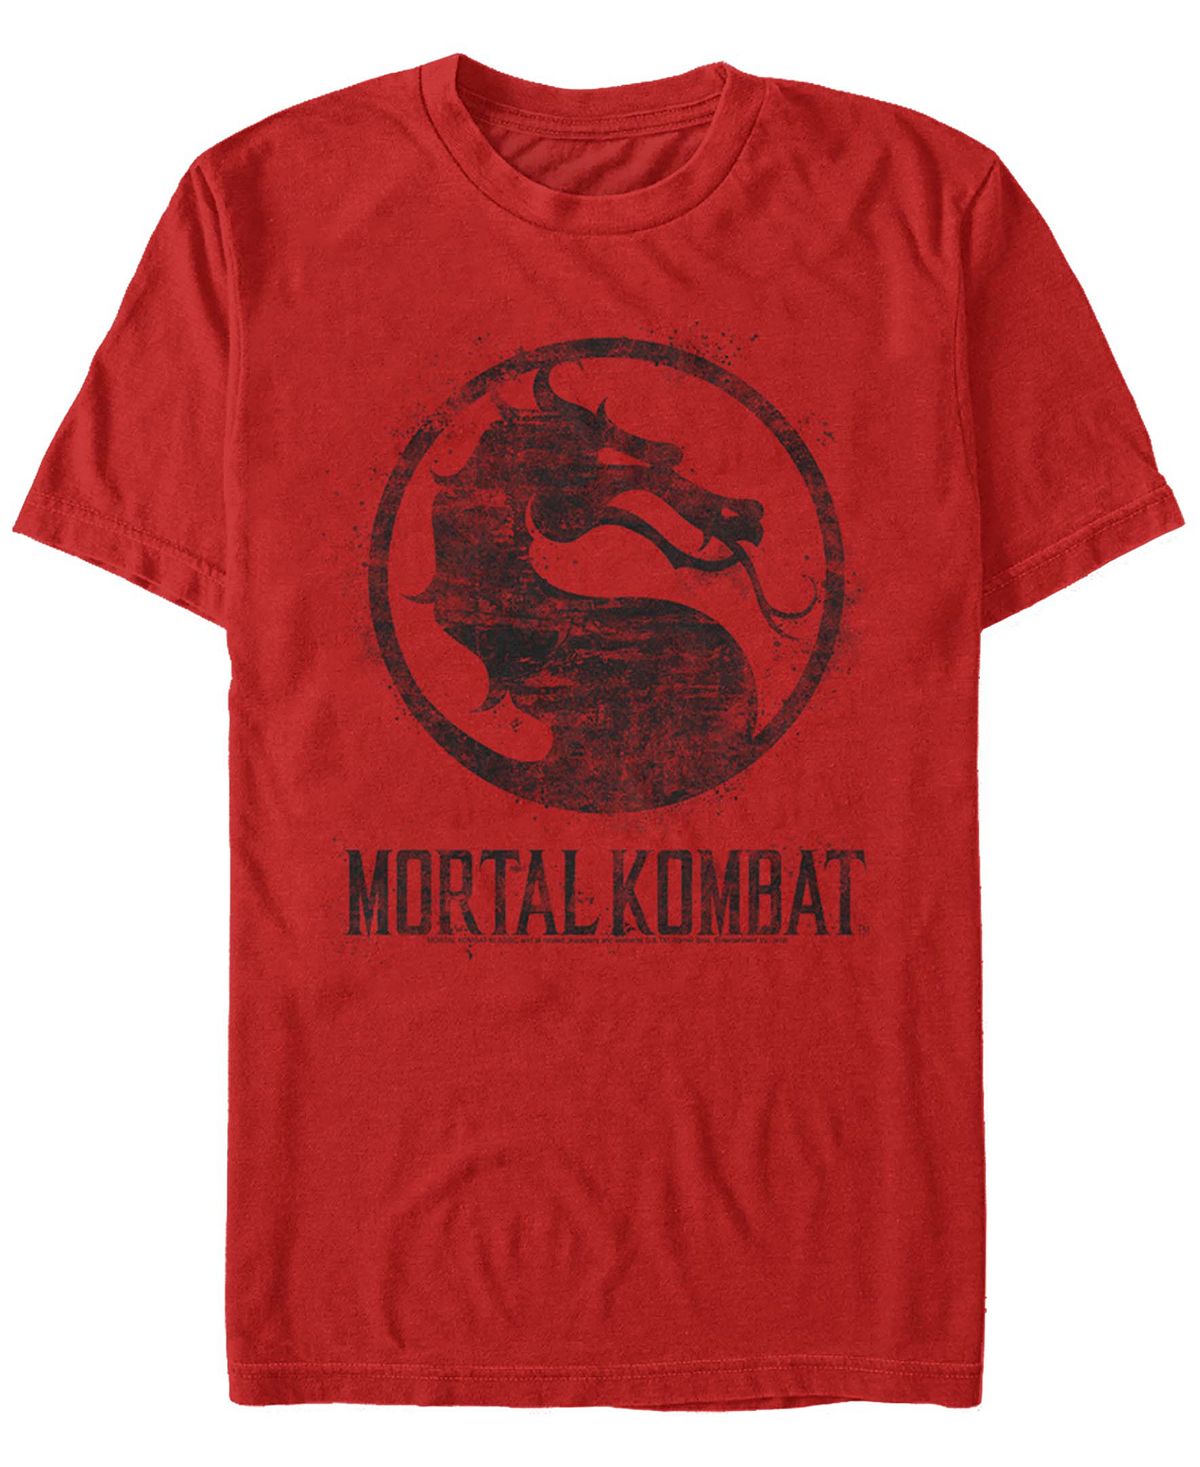 Мужская футболка с коротким рукавом с логотипом mortal kombat klassic splatter logo Fifth Sun, красный xbox игра wb mortal kombat 11